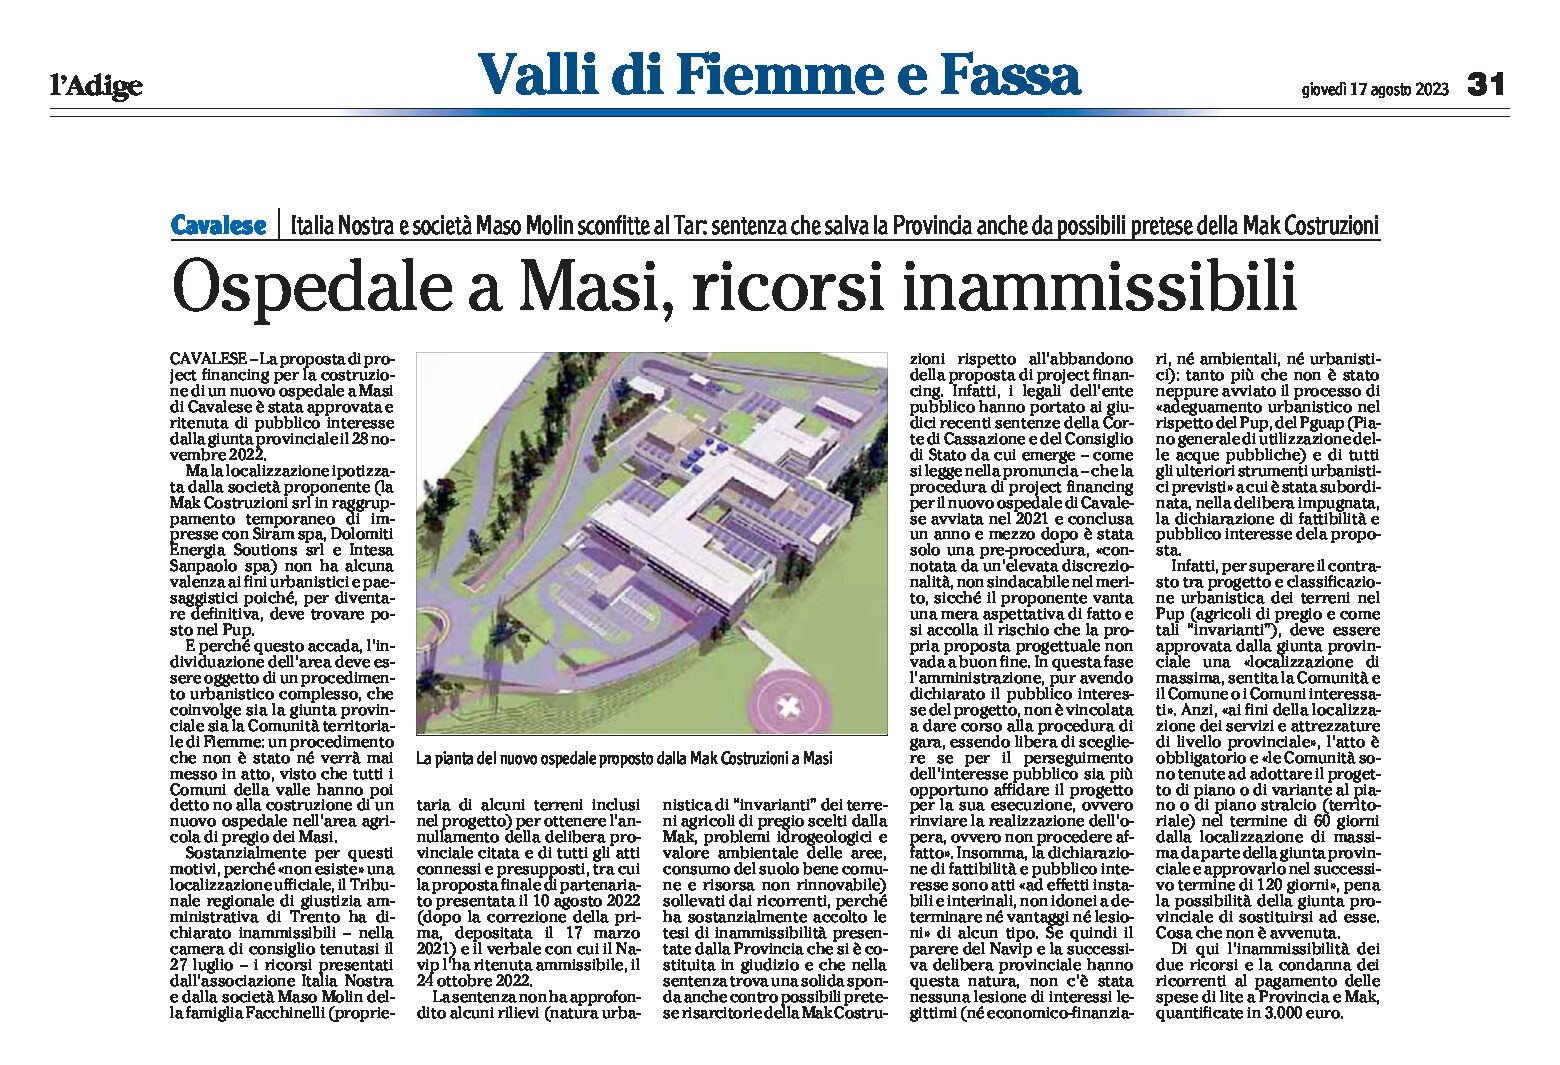 Cavalese, ospedale a Masi: ricorsi inammissibili. Italia Nostra e Maso Molin sconfitti al Tar